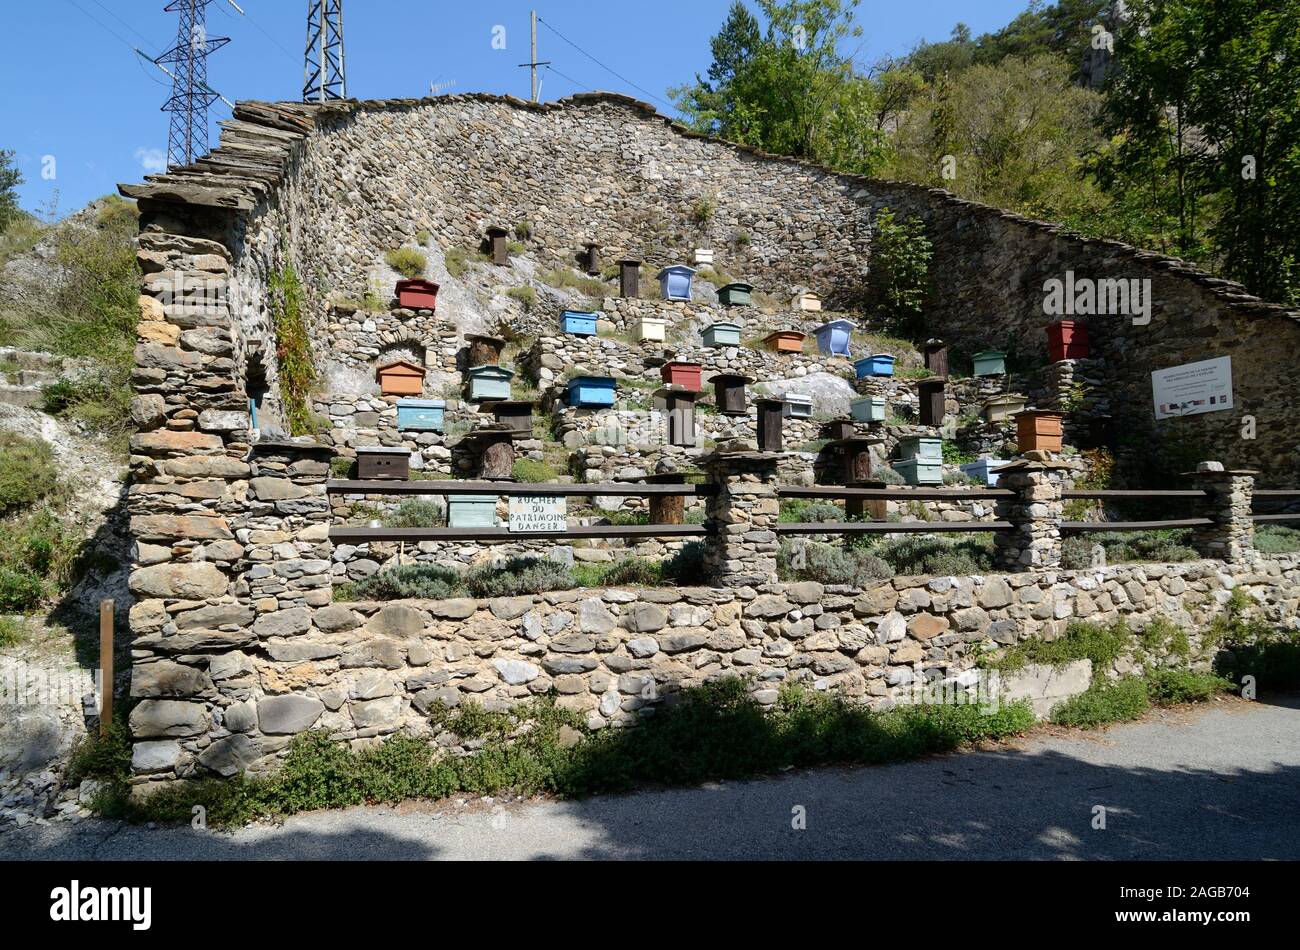 Unterschiedliche Modelle der Bienenstöcke in einem Ummauerten Imkerei oder Bienenhaus von trockenen Steinmauer umgeben von La Brigue in der Roya Valley Alpes-Maritimes Frankreich Stockfoto